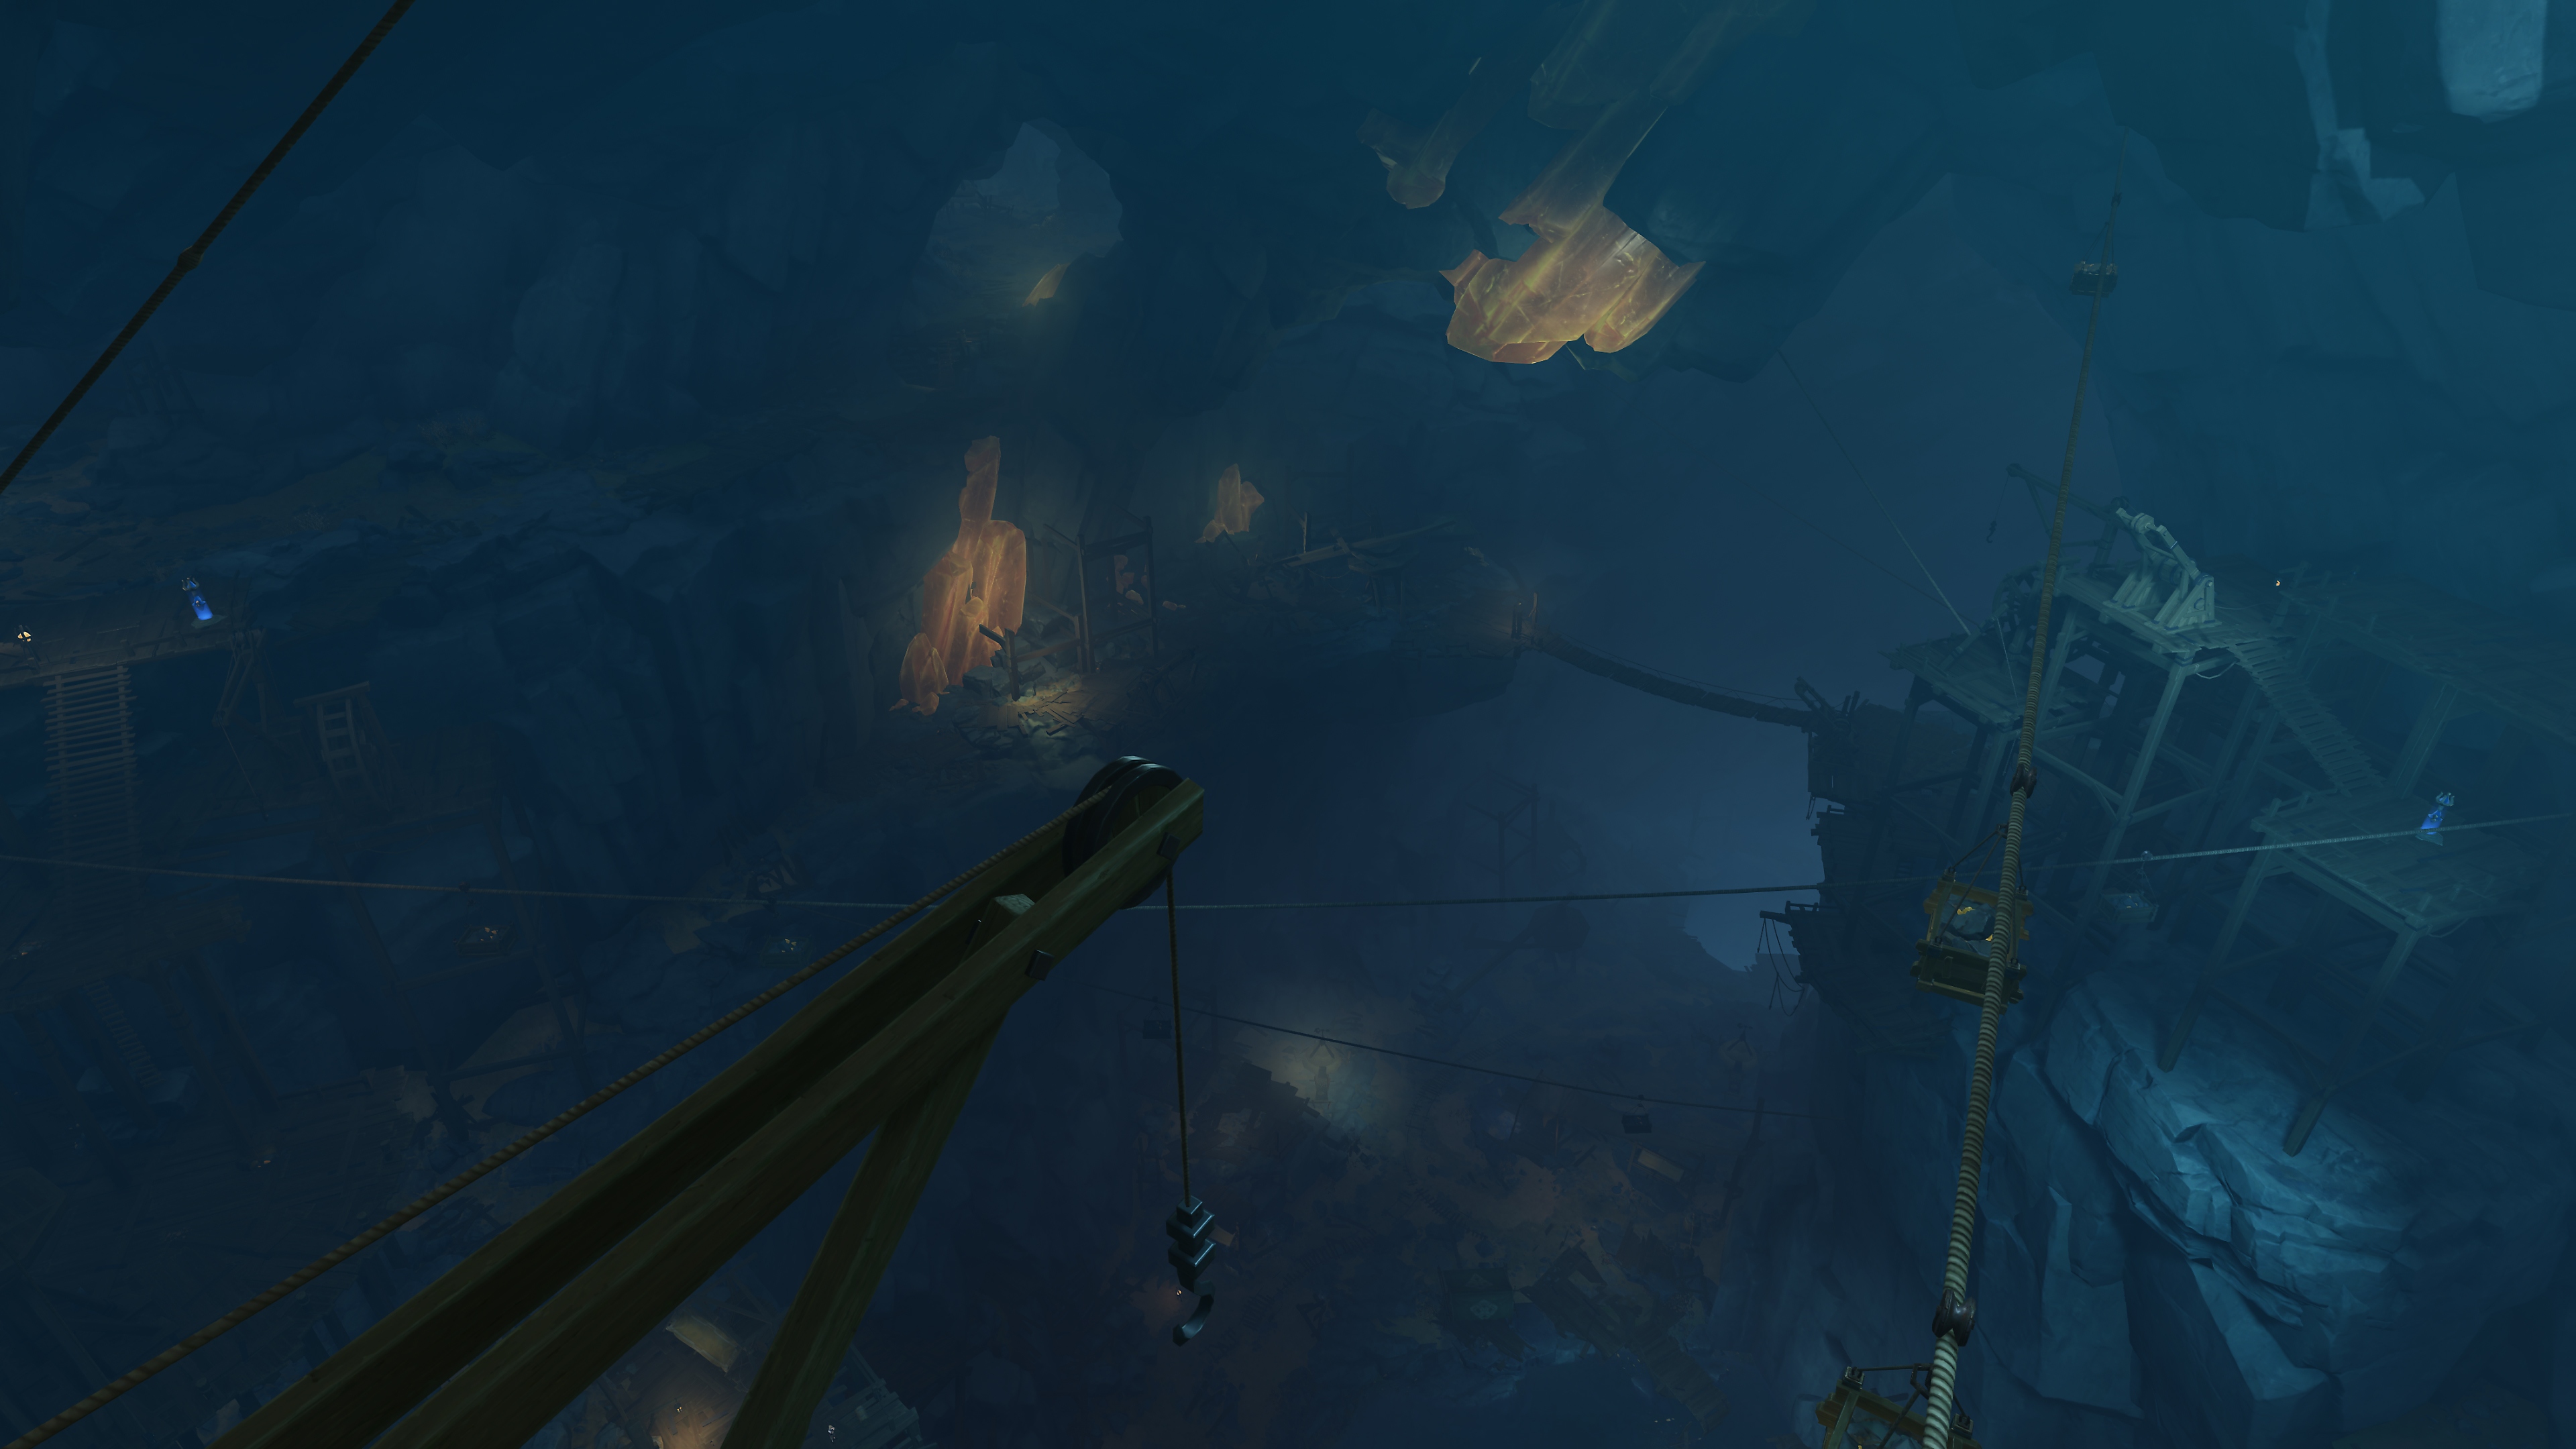 Genshin Impact: Atualização 2.6 - Captura de tela mostrando a cena de uma mina escura e subterrânea com cristais brilhantes nas rochas